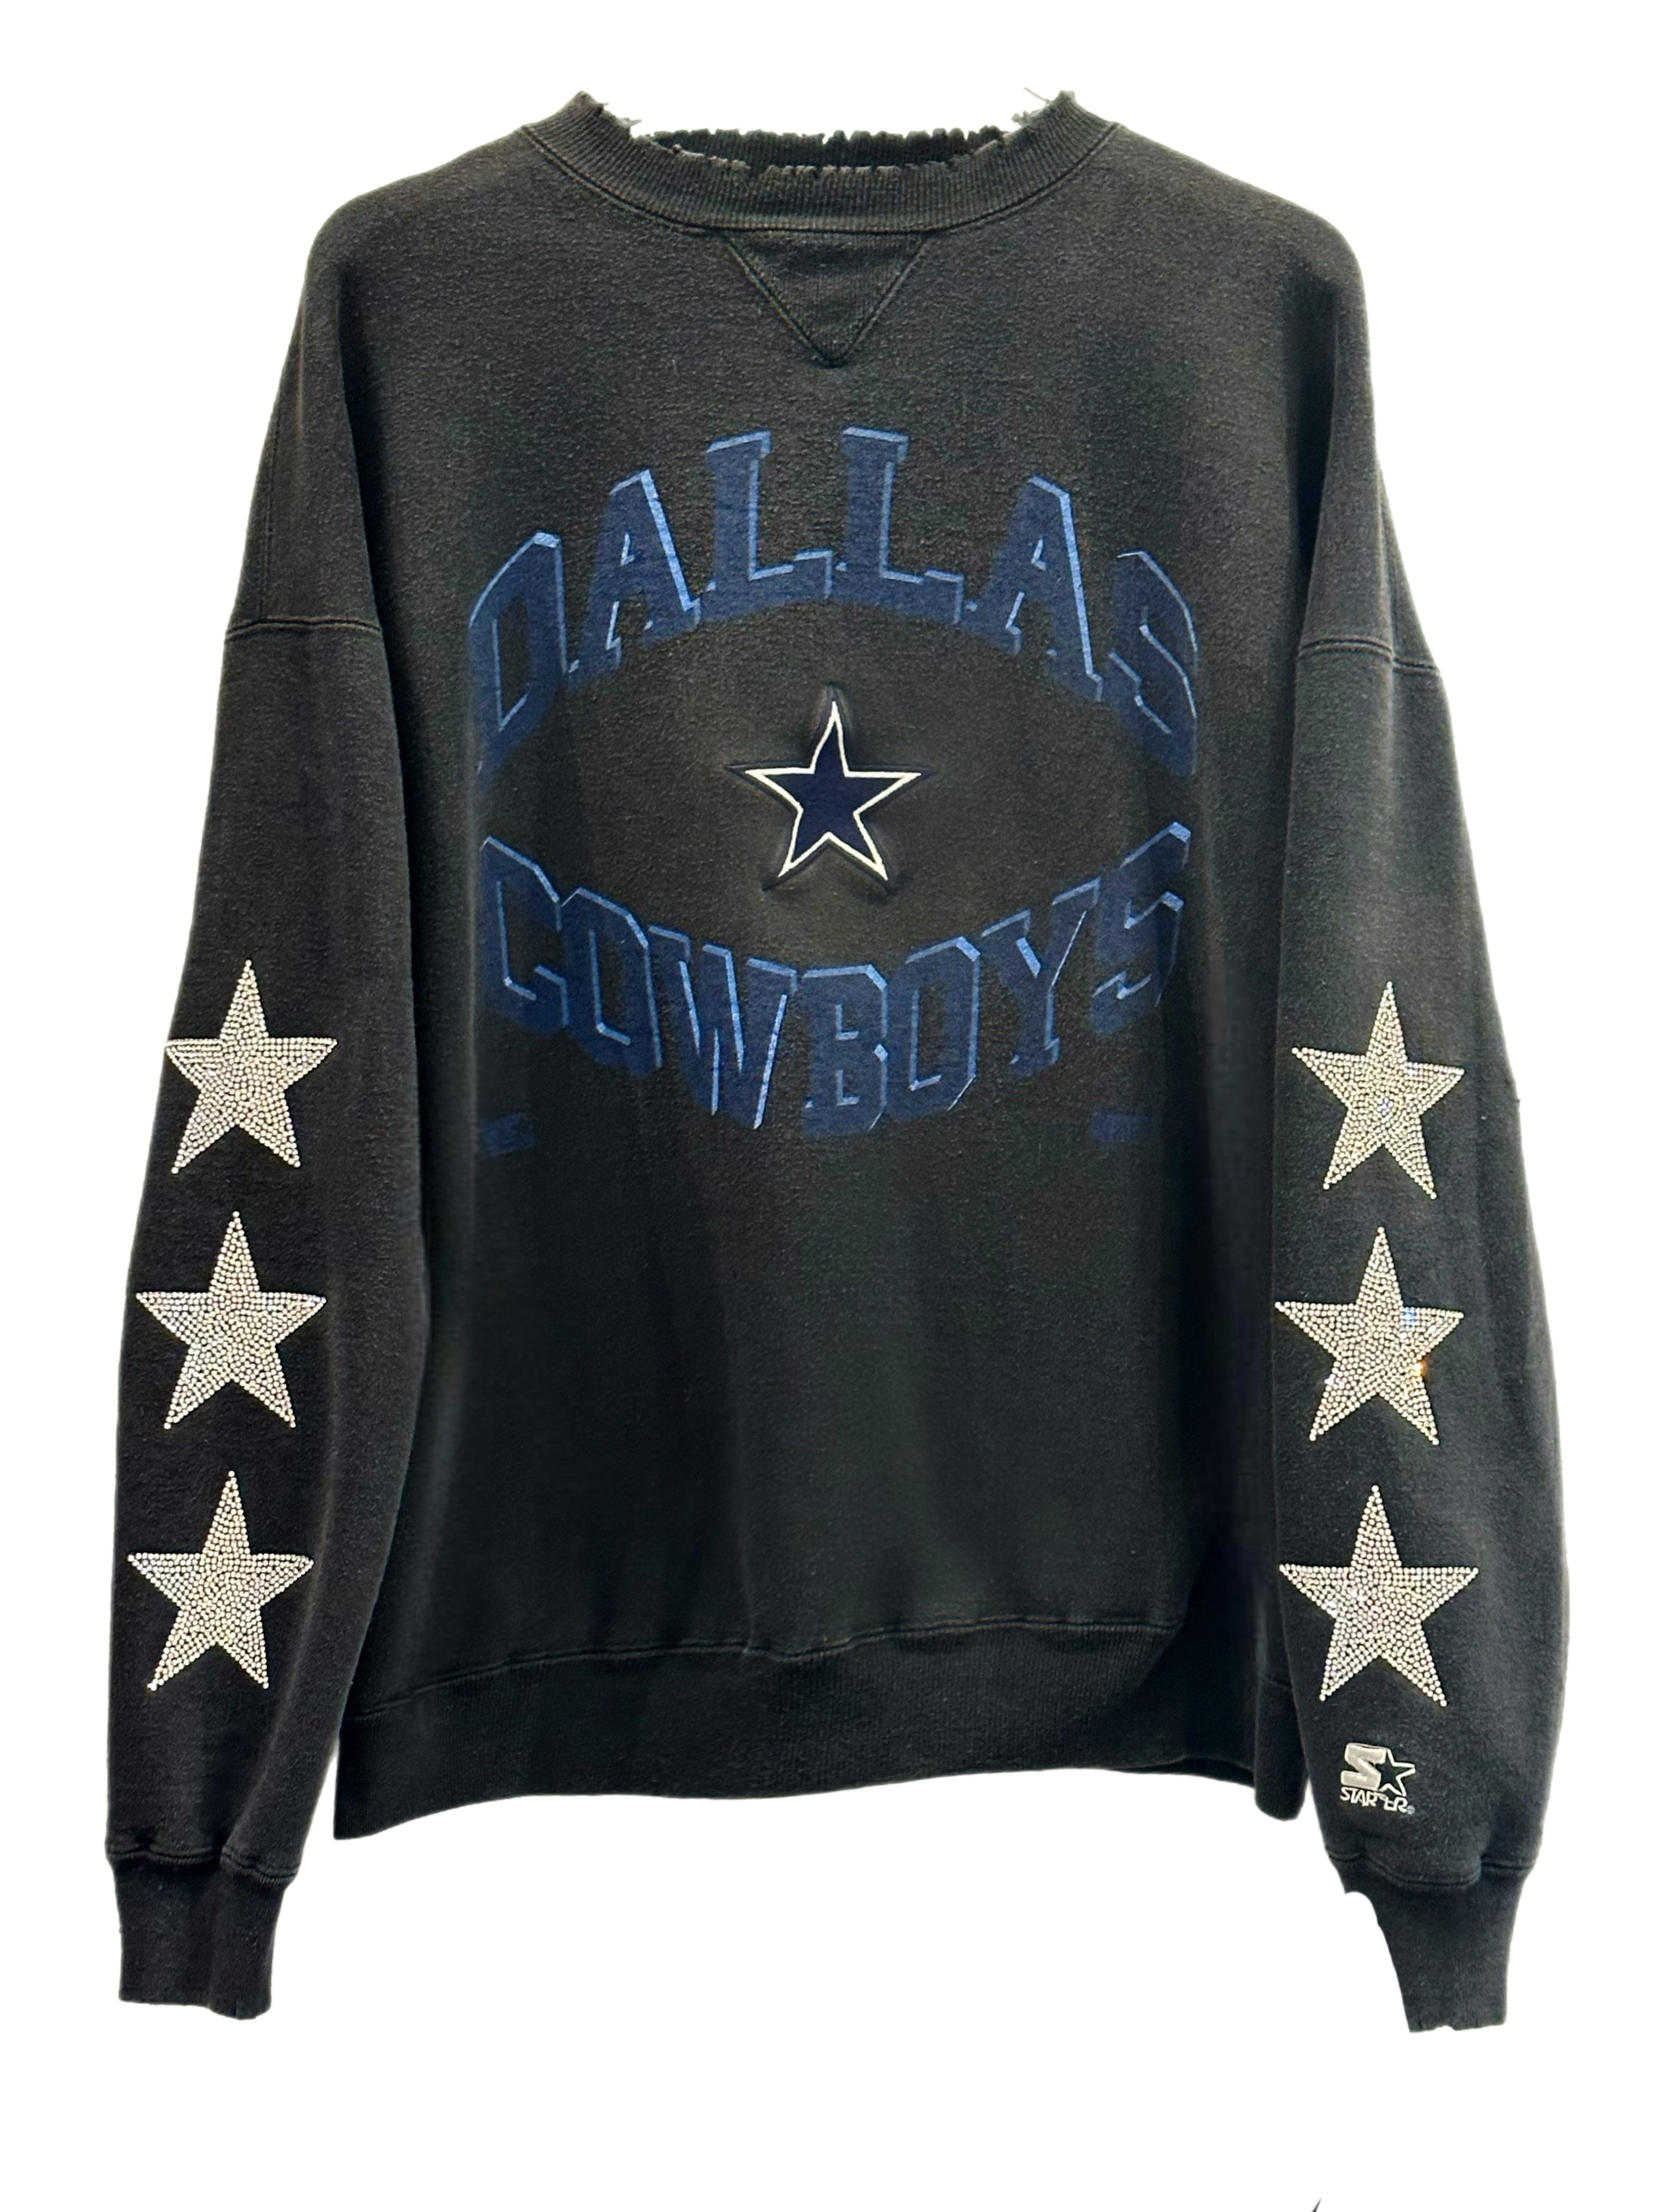 Vintage Dallas Cowboys NFL crewneck sweatshirt. Made in USA